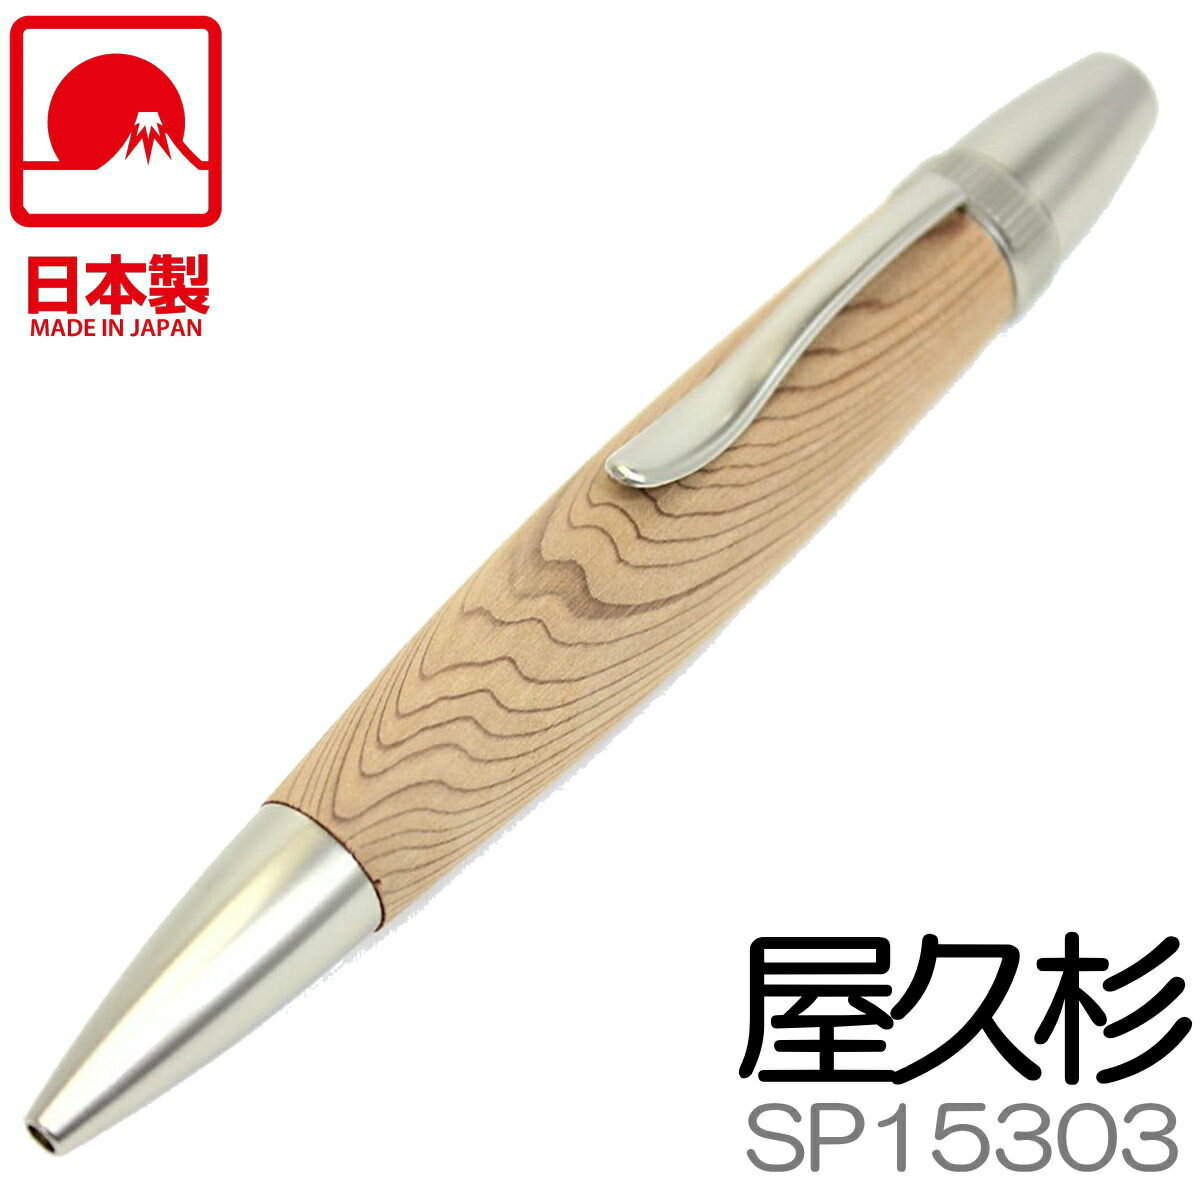 F-STYLE 手作りボールペン | 屋久杉 やくすぎ | 縁起杢 | SP15303 パトリオット | 全長125mm | 日本製 銘木 木製 木軸ペン エフスタイル